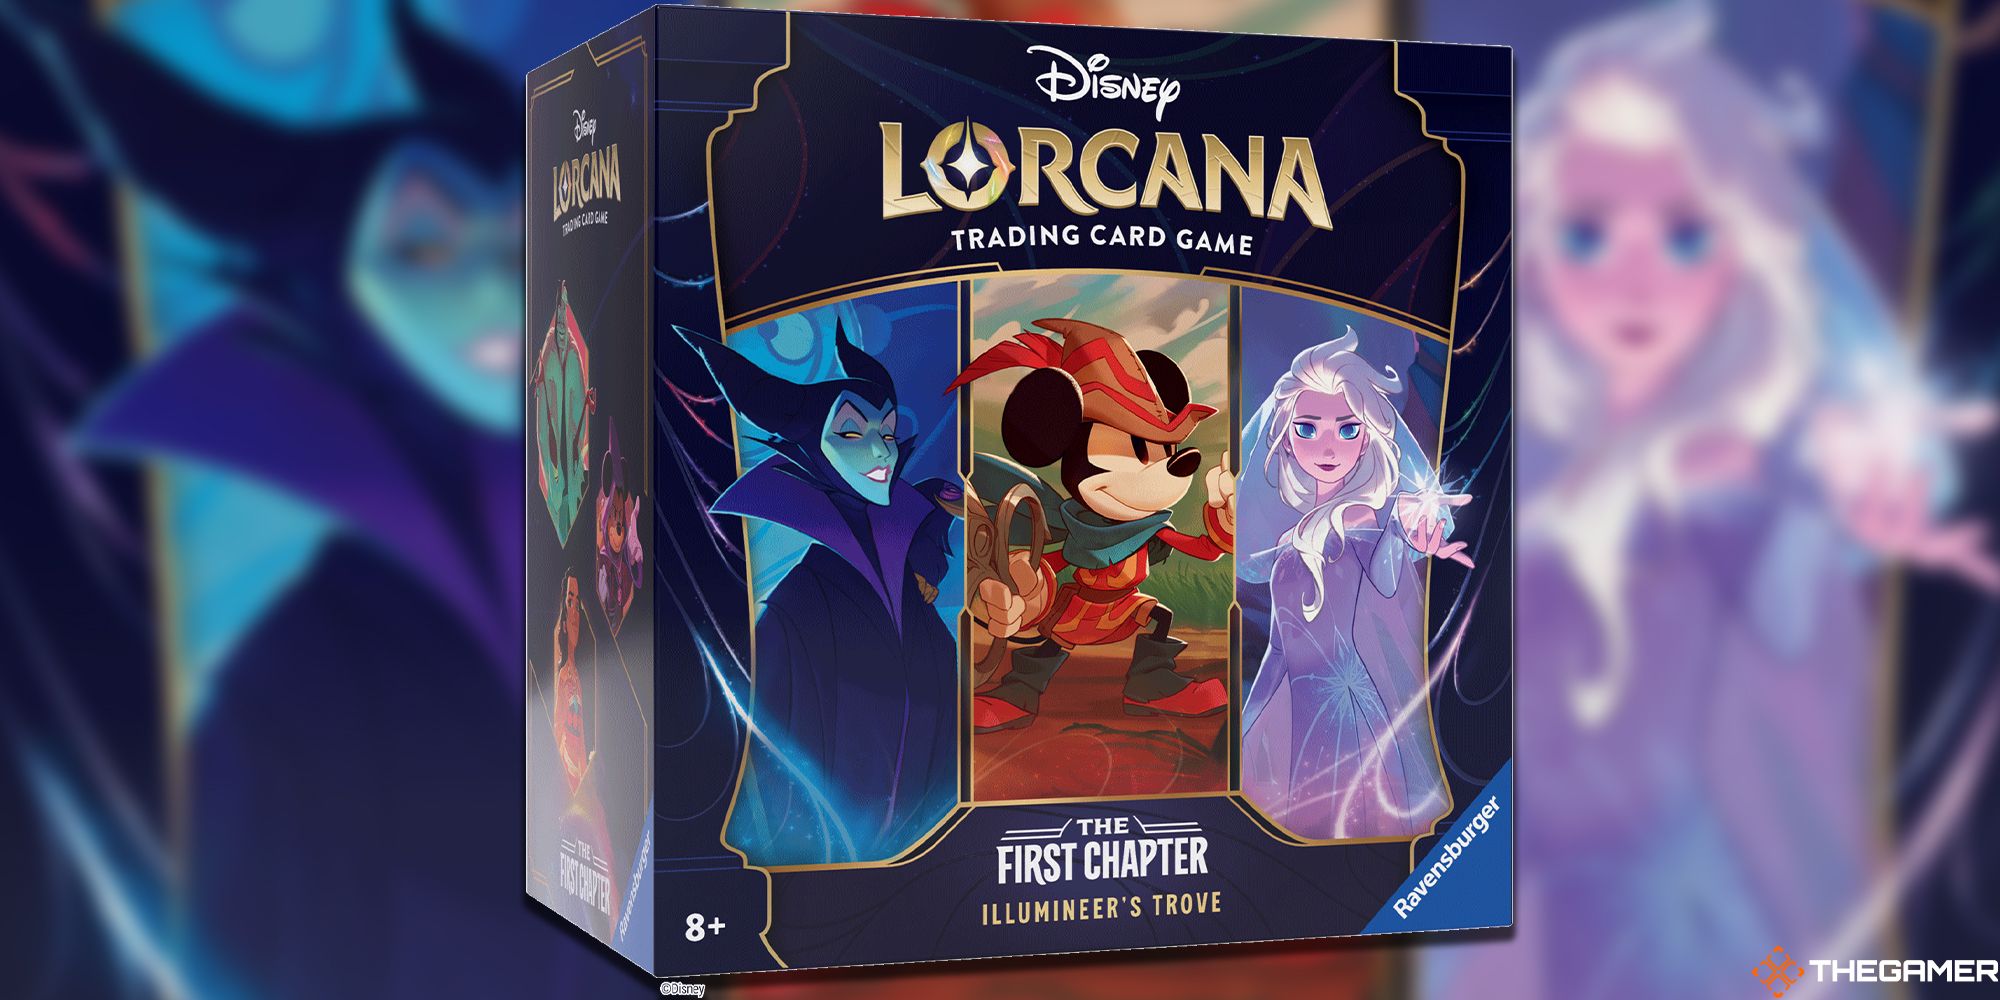 Illumineers Trove for Disney Lorcana